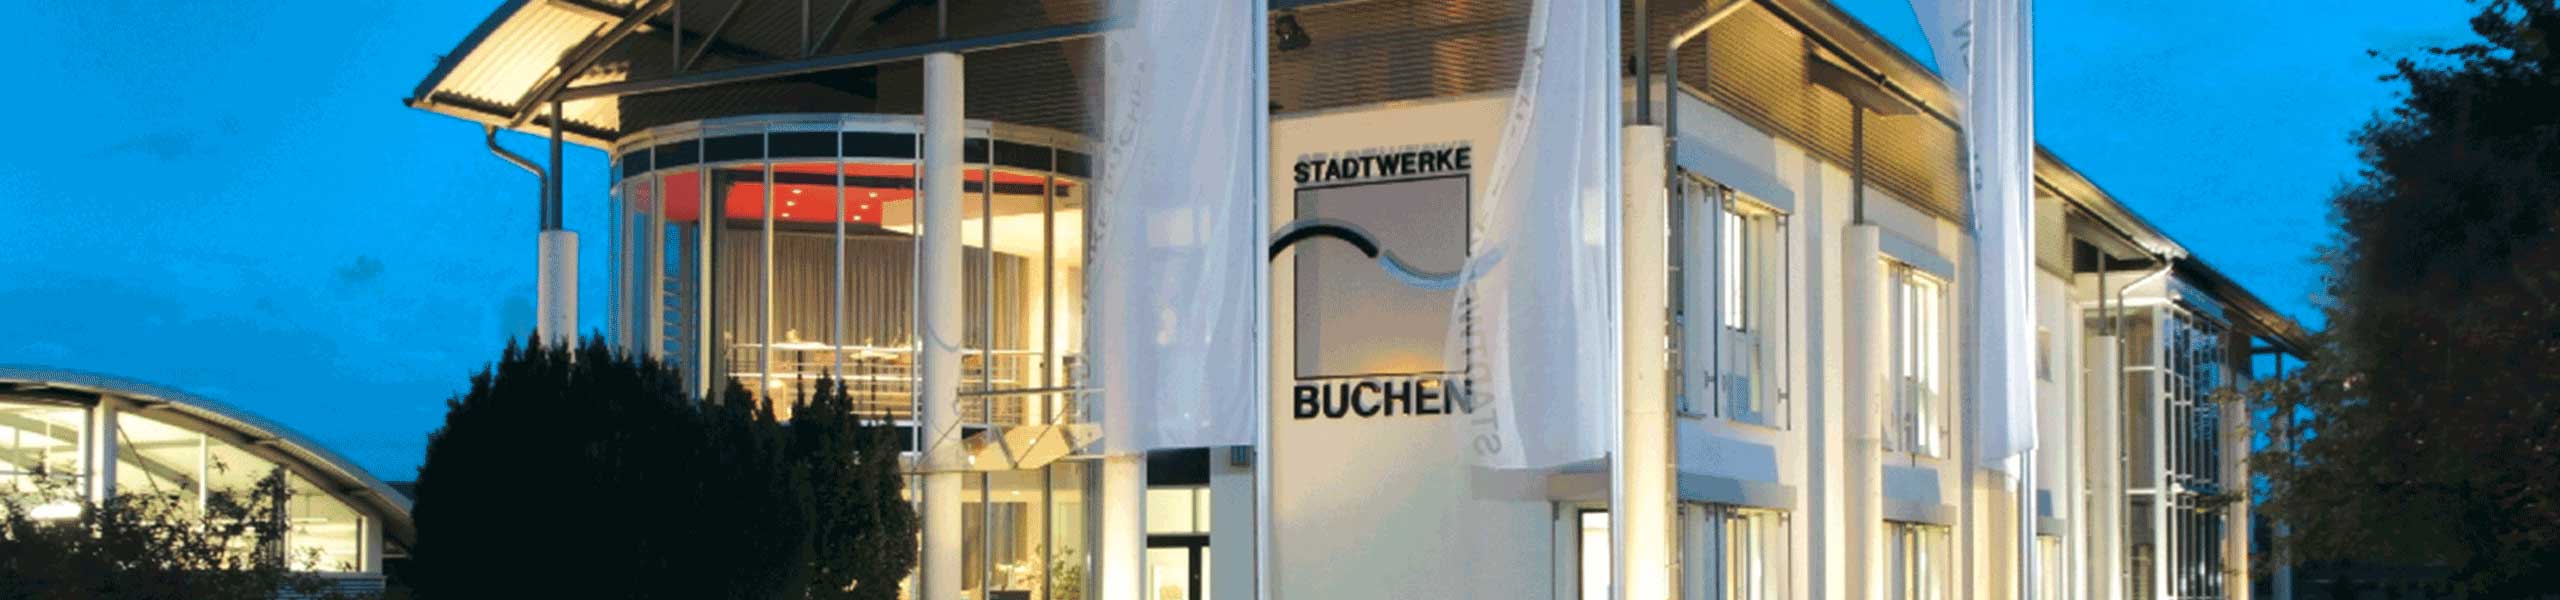 Stadtwerke Buchen GmbH & Co KG - Freibadsaison verlängert